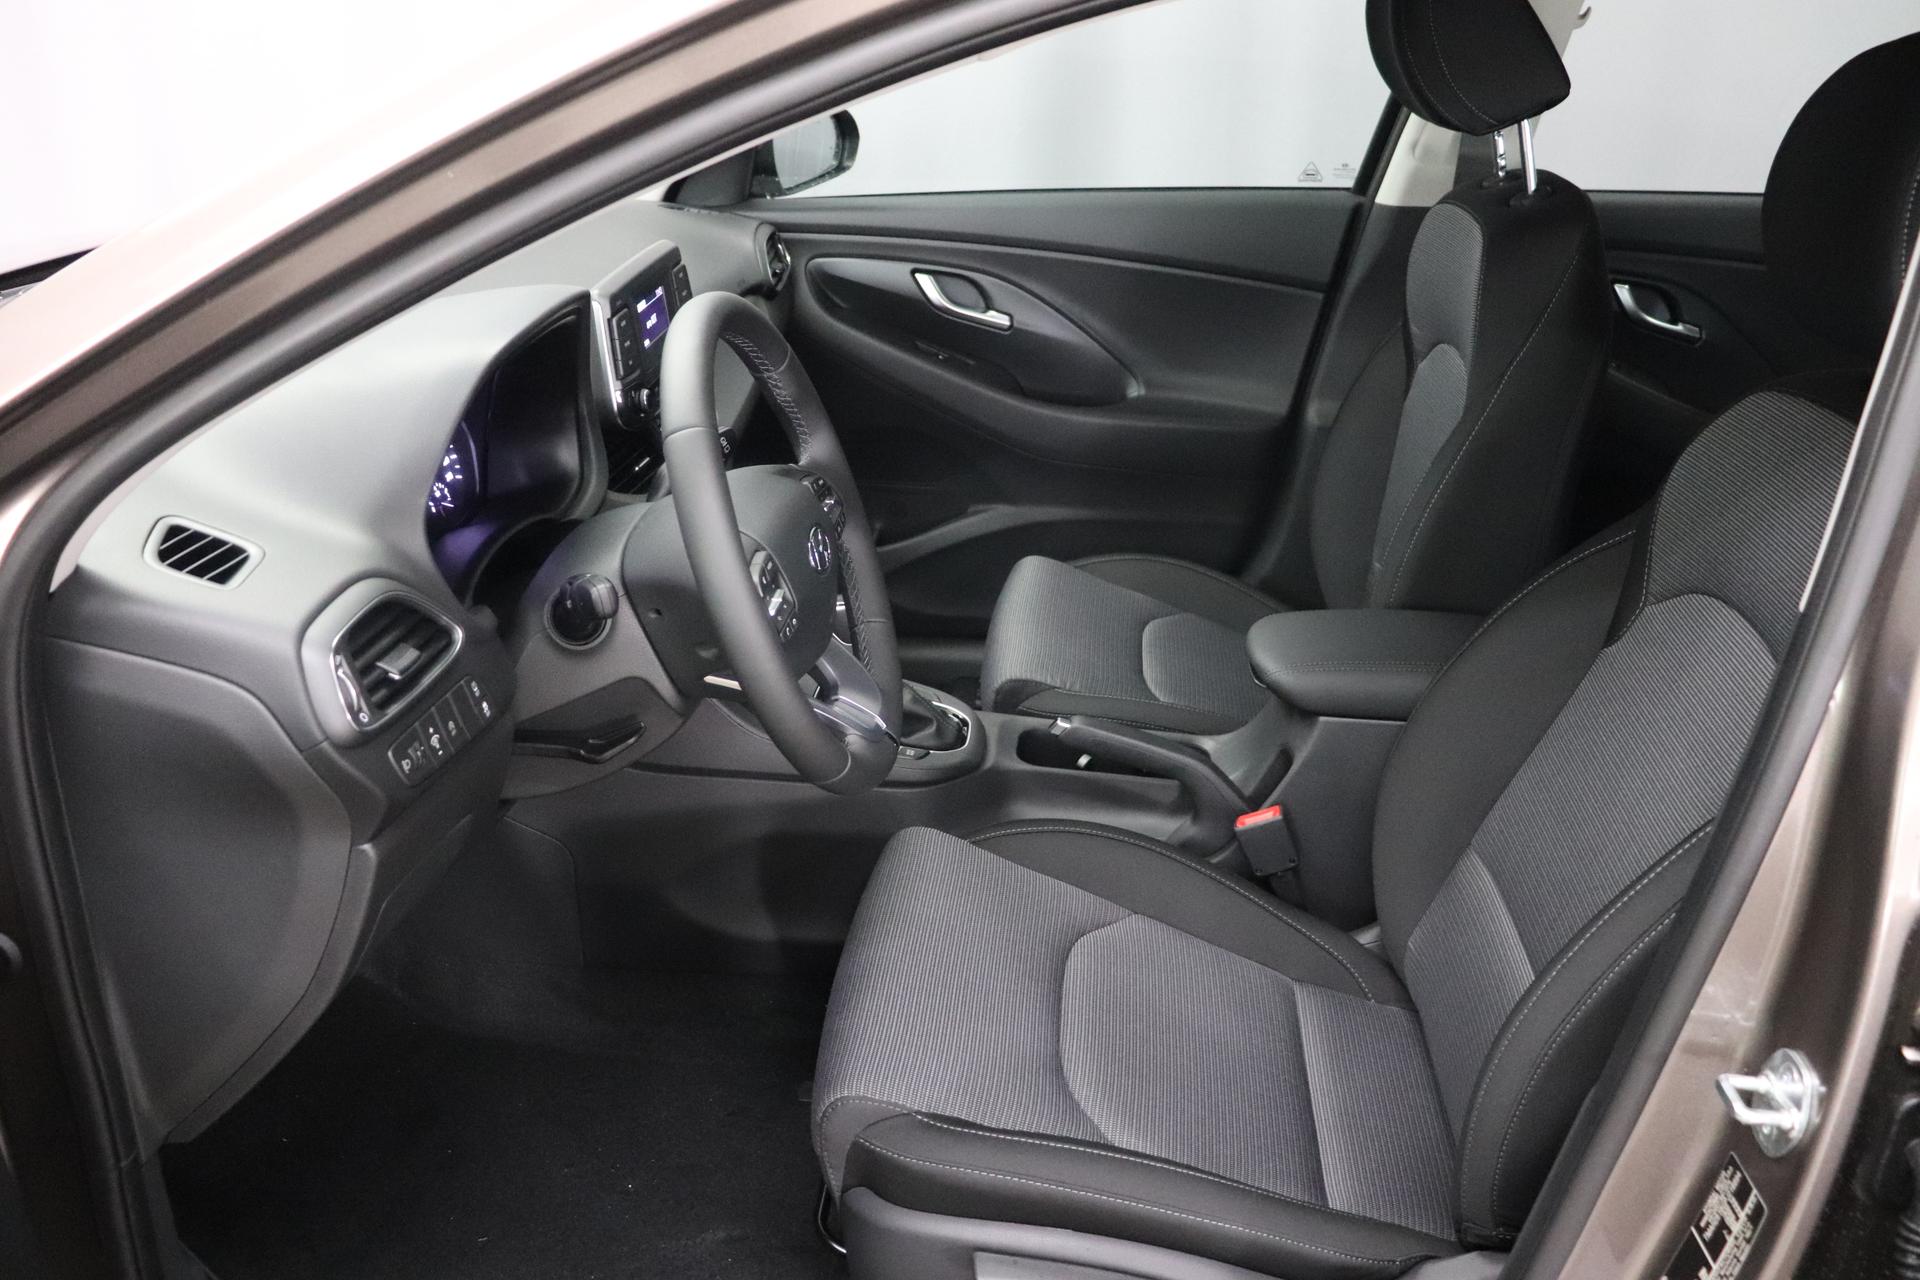 Hyundai i30 Comfort 1.0 T-GDi 7DCT FL, Klimaanlage, Sitzheizung,  Lederlenkrad, Radio DAB, Freisprecheinrichtung, Lichtsensor, Tempomat,  Einparkhilfe hinten, Nebelscheinwerfer, 16 Zoll Leichtmetallfelgen, uvm.  Reimport EU-Neuwagen günstig kaufen